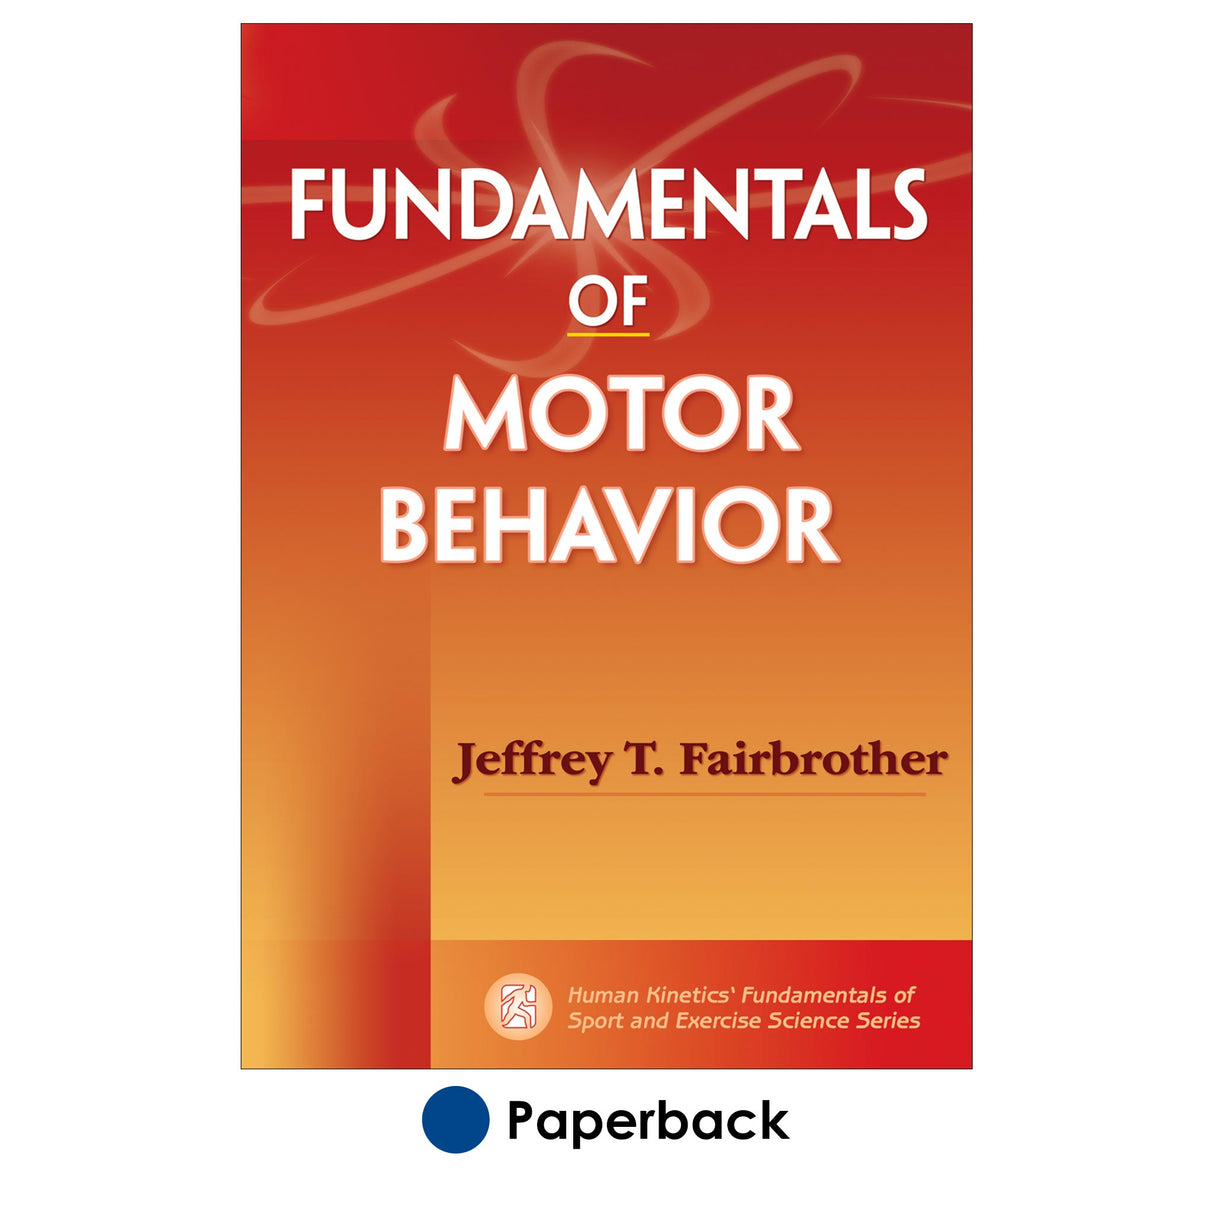 Fundamentals of Motor Behavior